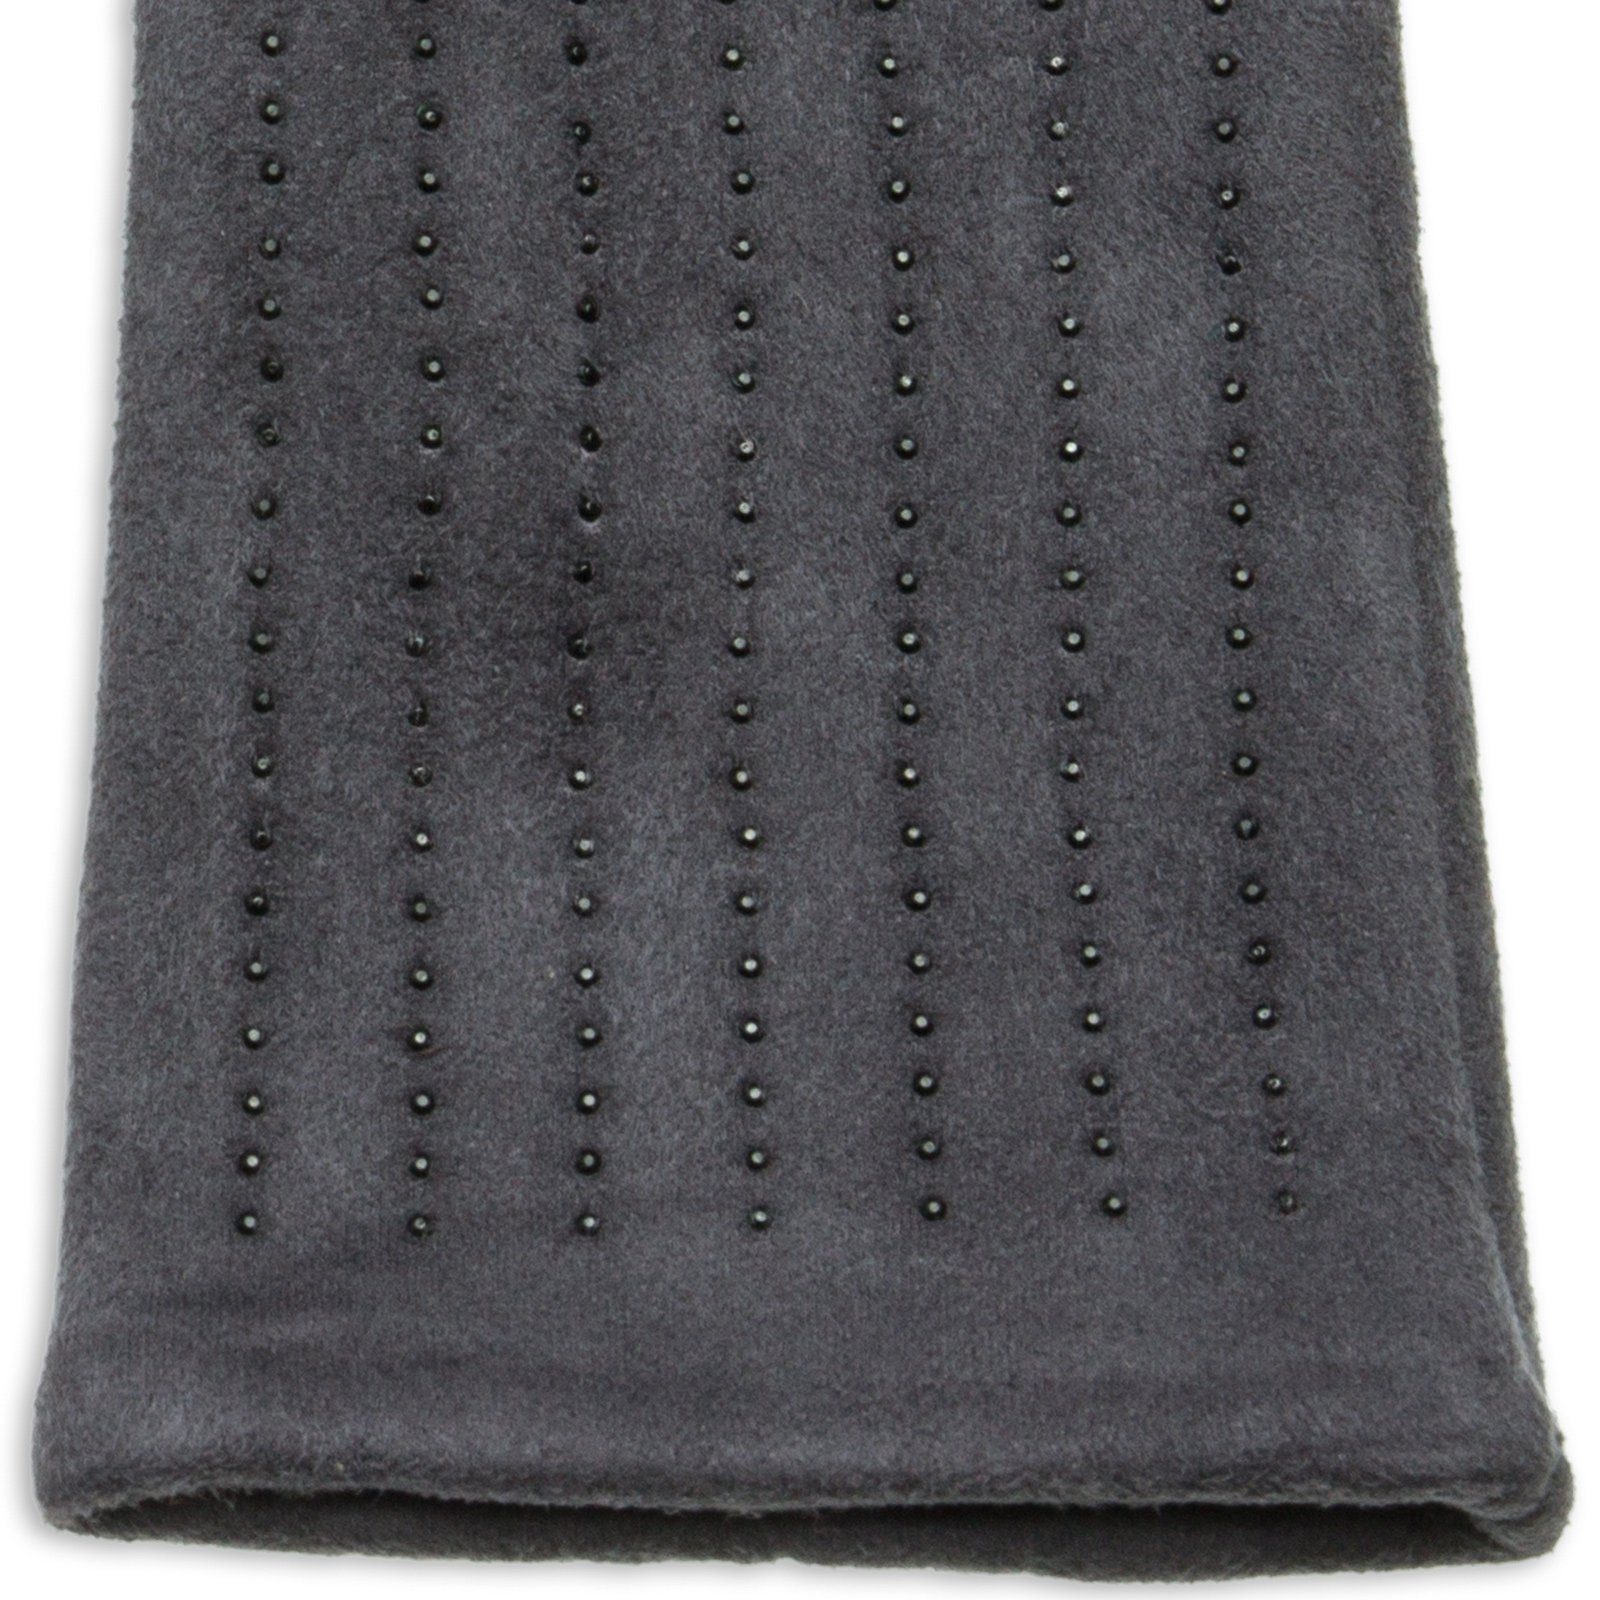 Strickhandschuhe Handschuhe Touchscreen und elegante Damen Strass Funktion mit grau klassisch Dekor GLV011 Caspar